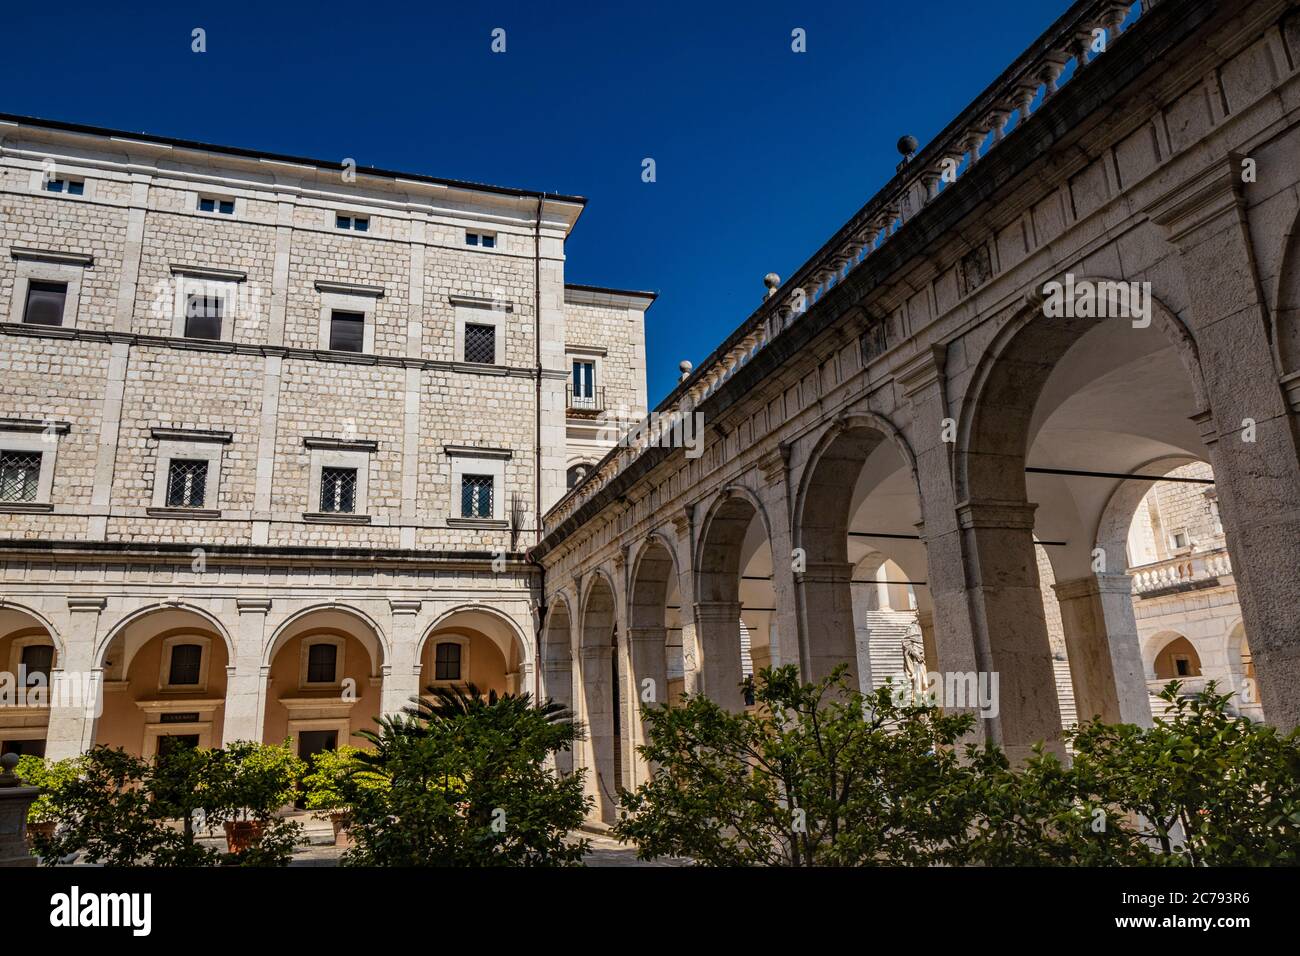 3 de julio de 2020 - Abadía de Montecassino, Cassino, Italia - Monasterio benedictino situado en la parte superior de Montecassino es el monasterio más antiguo de Italia. Cloiste Foto de stock